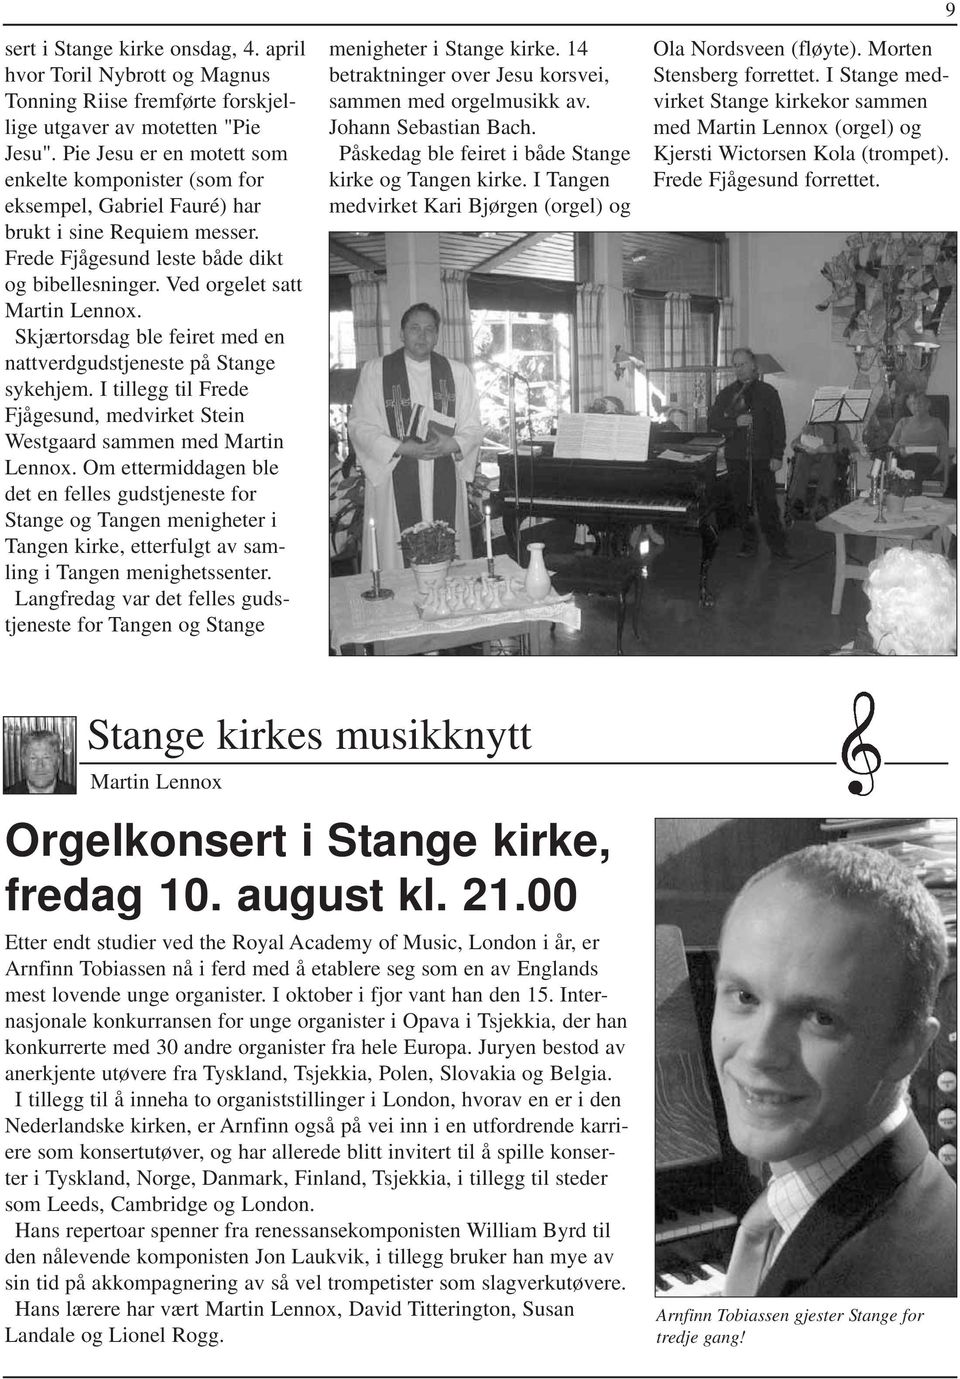 Skjærtorsdag ble feiret med en nattverdgudstjeneste på Stange sykehjem. I tillegg til Frede Fjågesund, medvirket Stein Westgaard sammen med Martin Lennox.